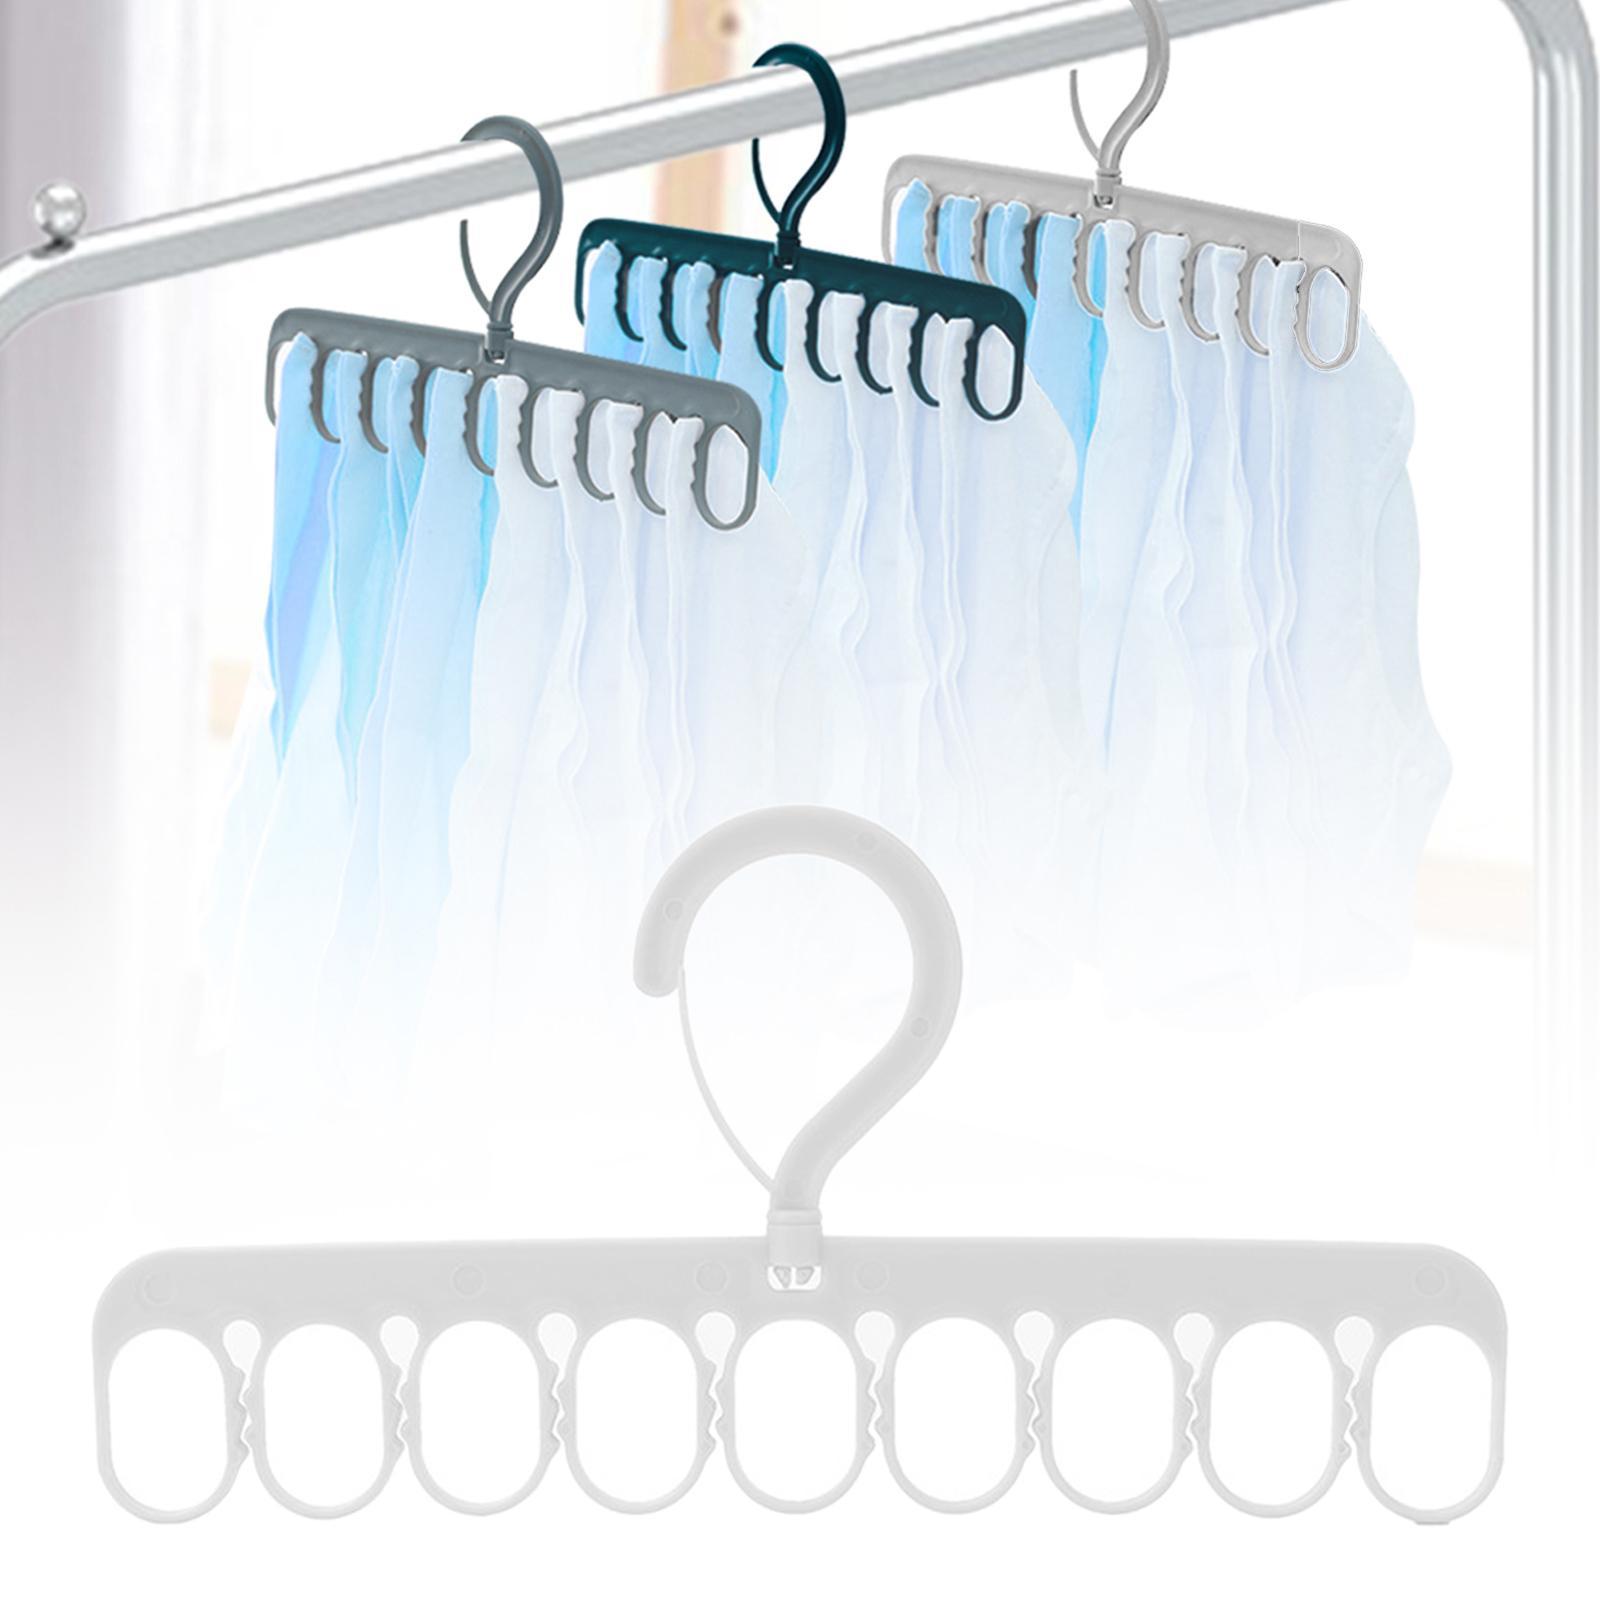 Portable Clothing Hanger Support Hanger Drying Hanger for Pants Socks Scarf